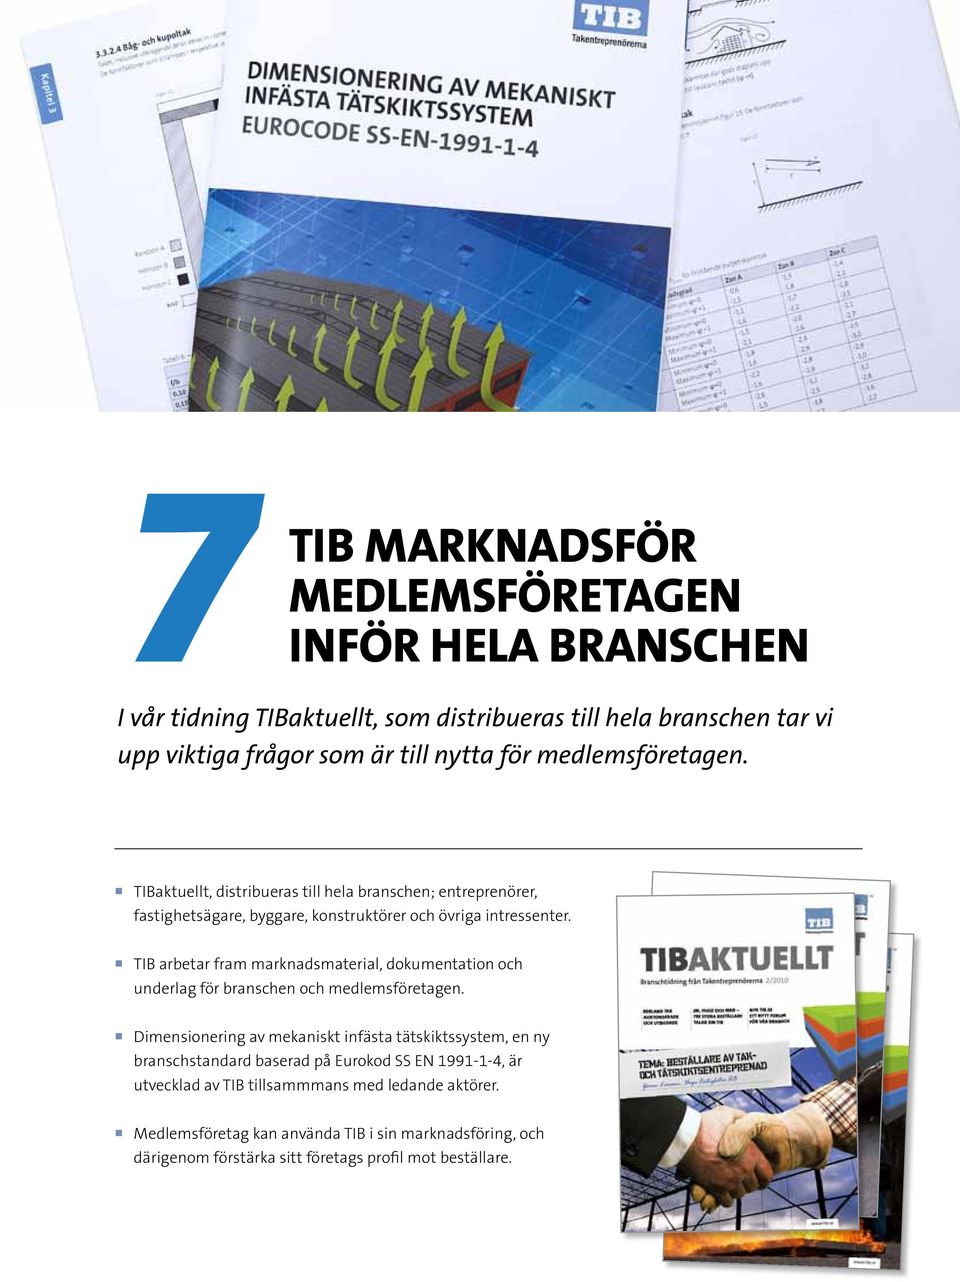 TIB arbetar fram marknadsmaterial, dokumentation och underlag för branschen och medlemsföretagen.